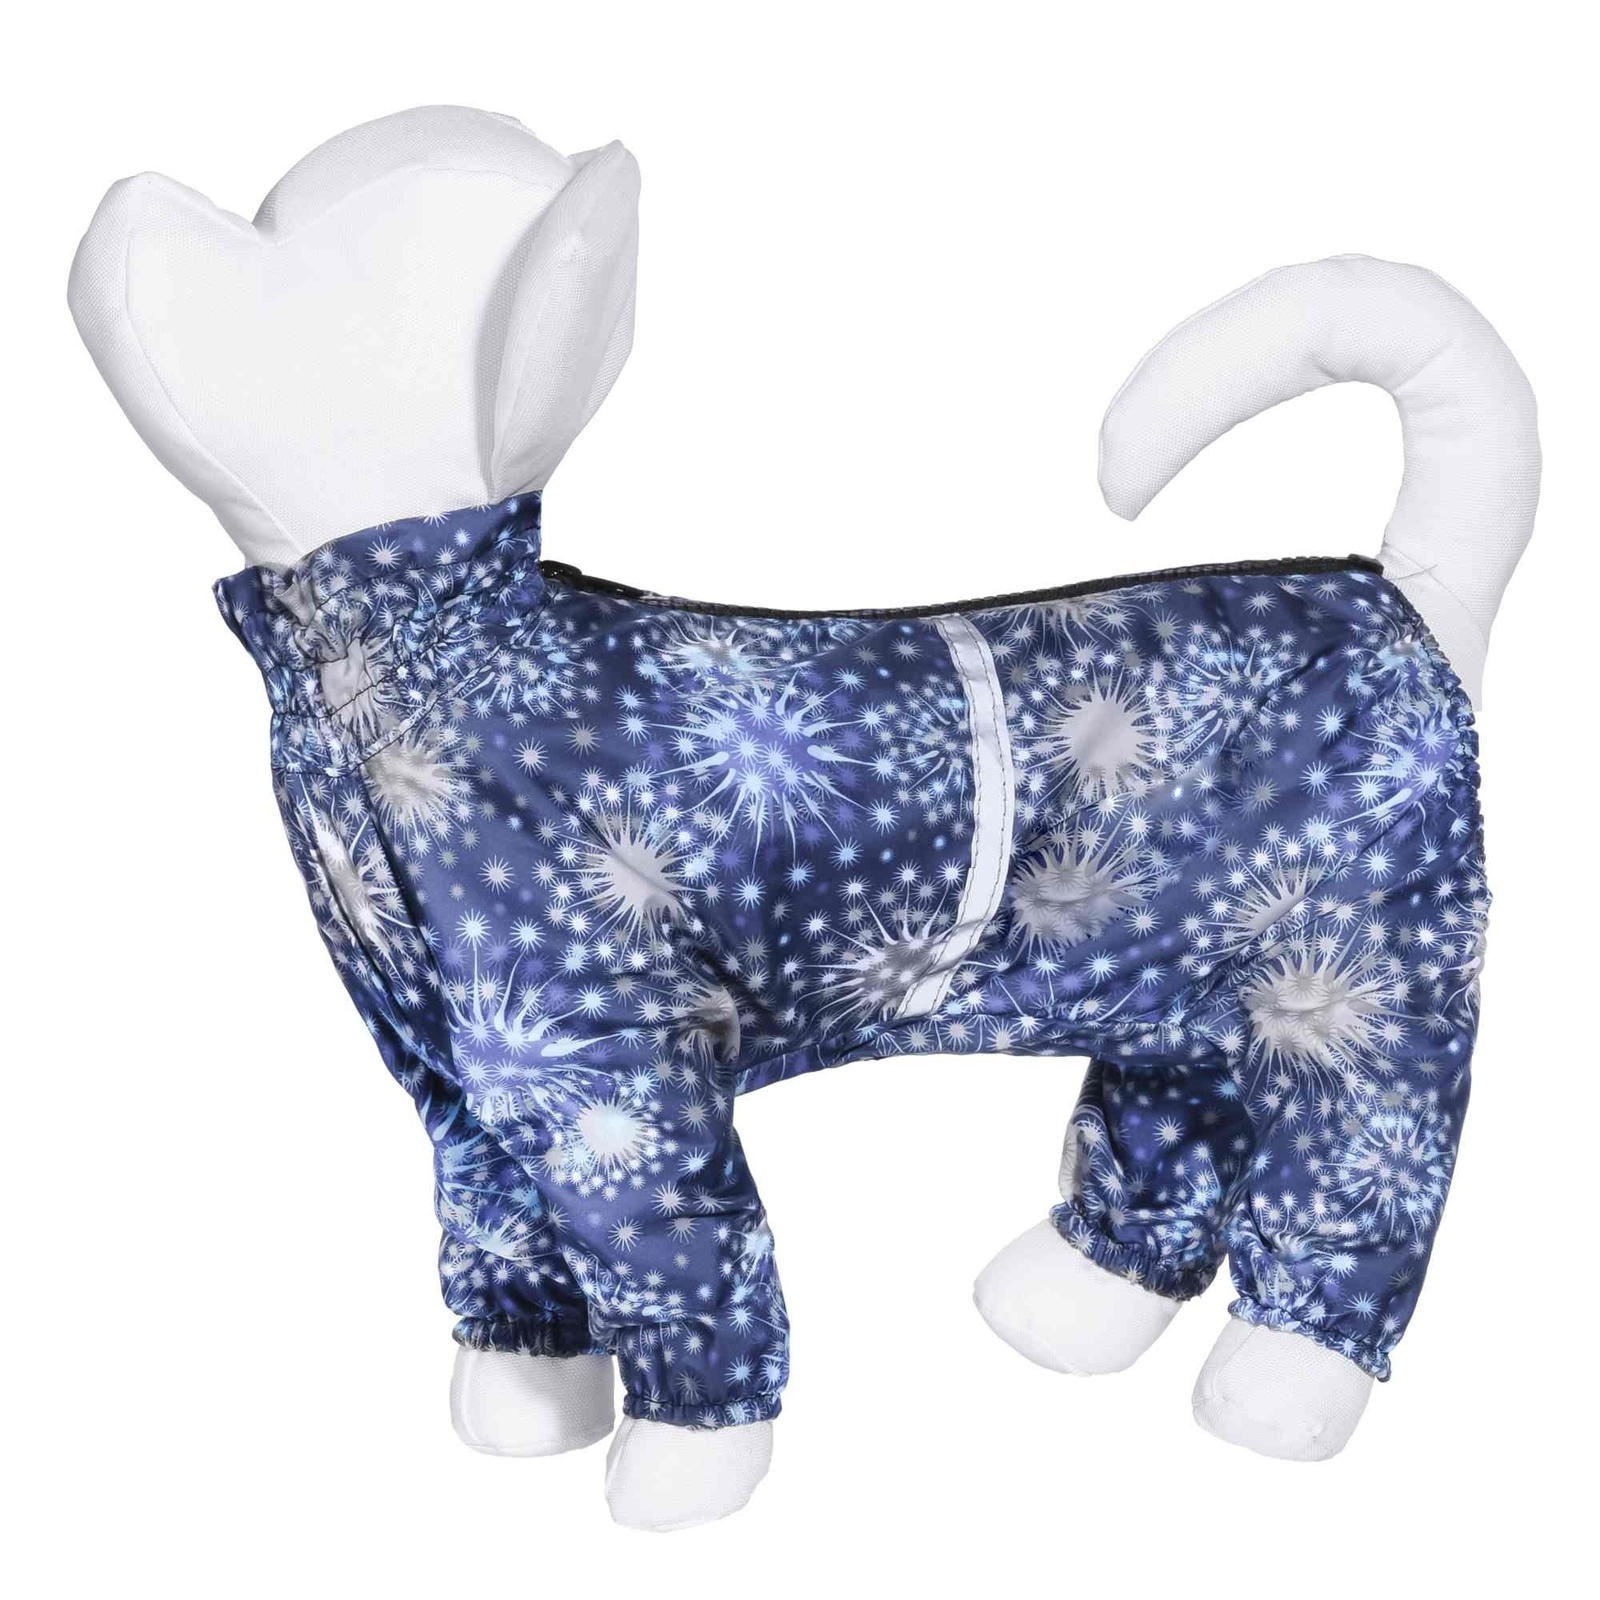 Yami-Yami одежда Yami-Yami одежда дождевик для собак с рисунком Огни синий для малых пород (№1) 46490